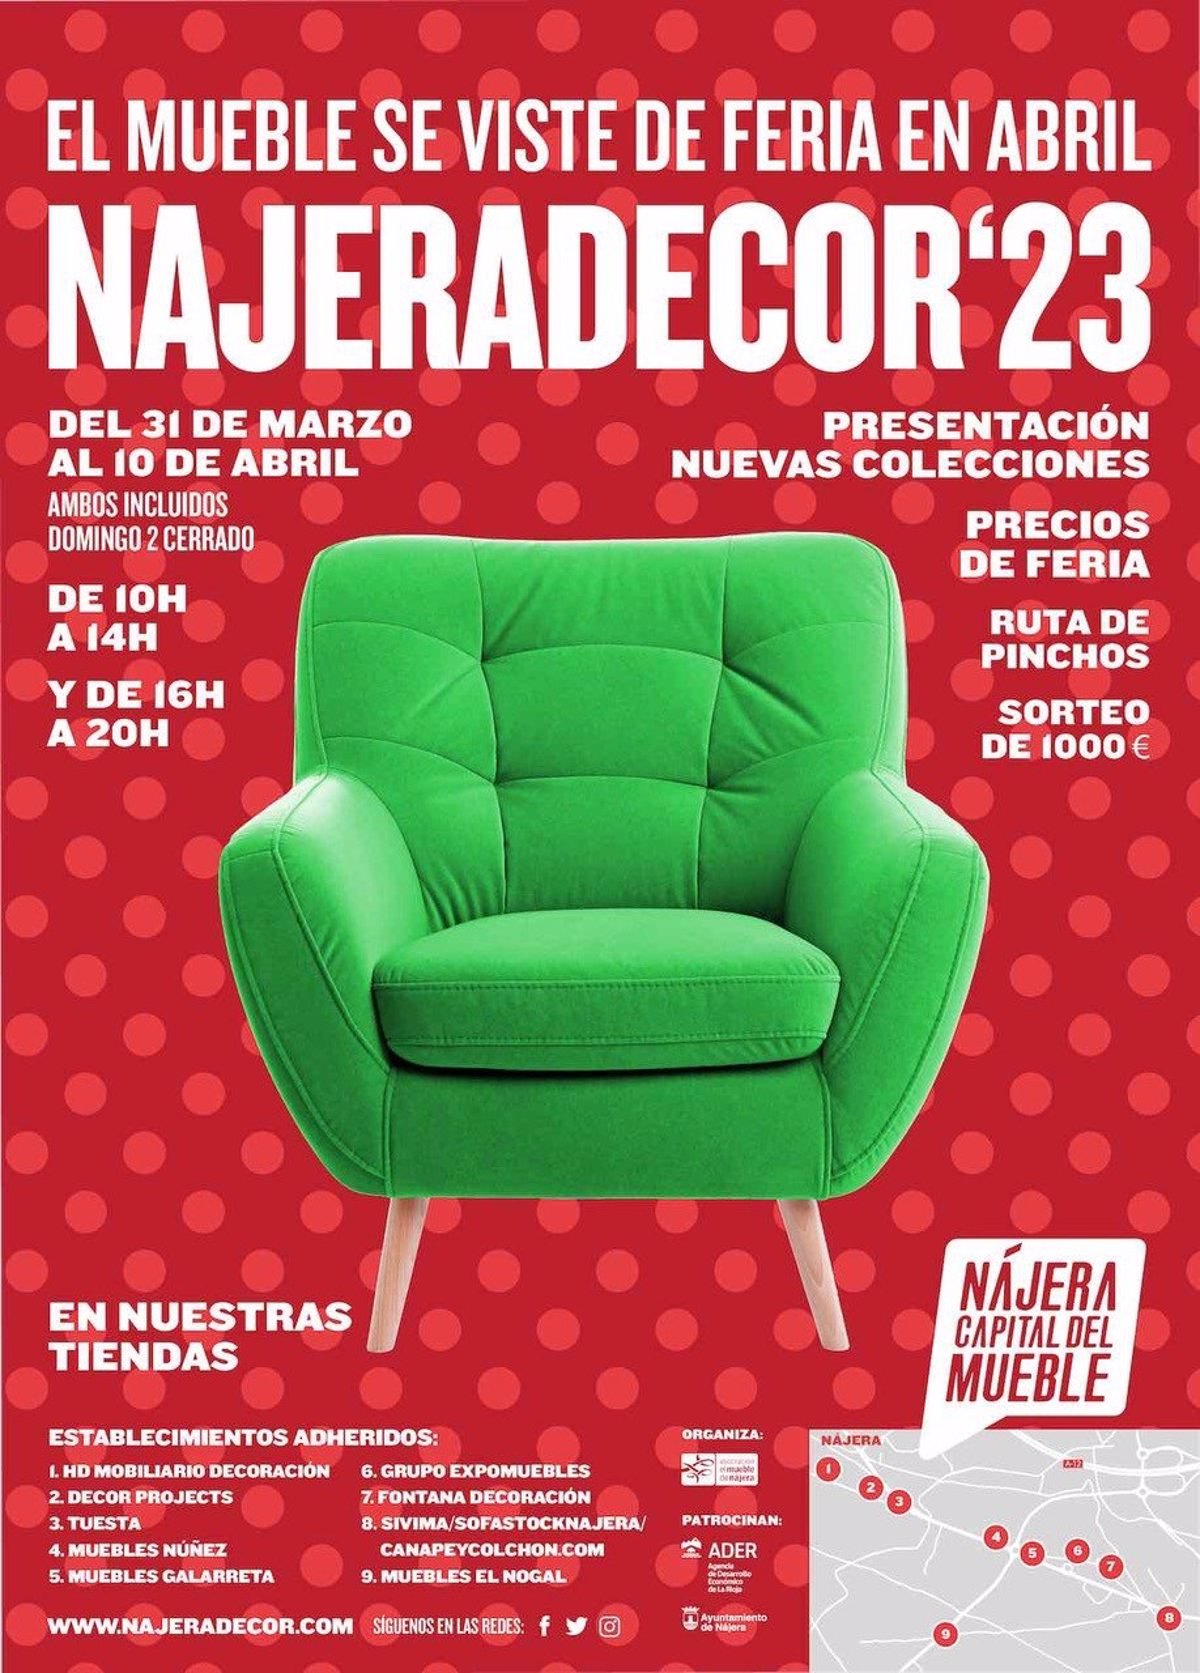 La Feria NájeraDecor 2023 se desarrollará del 31 de marzo al 10 de abril con participación de nueve empresas